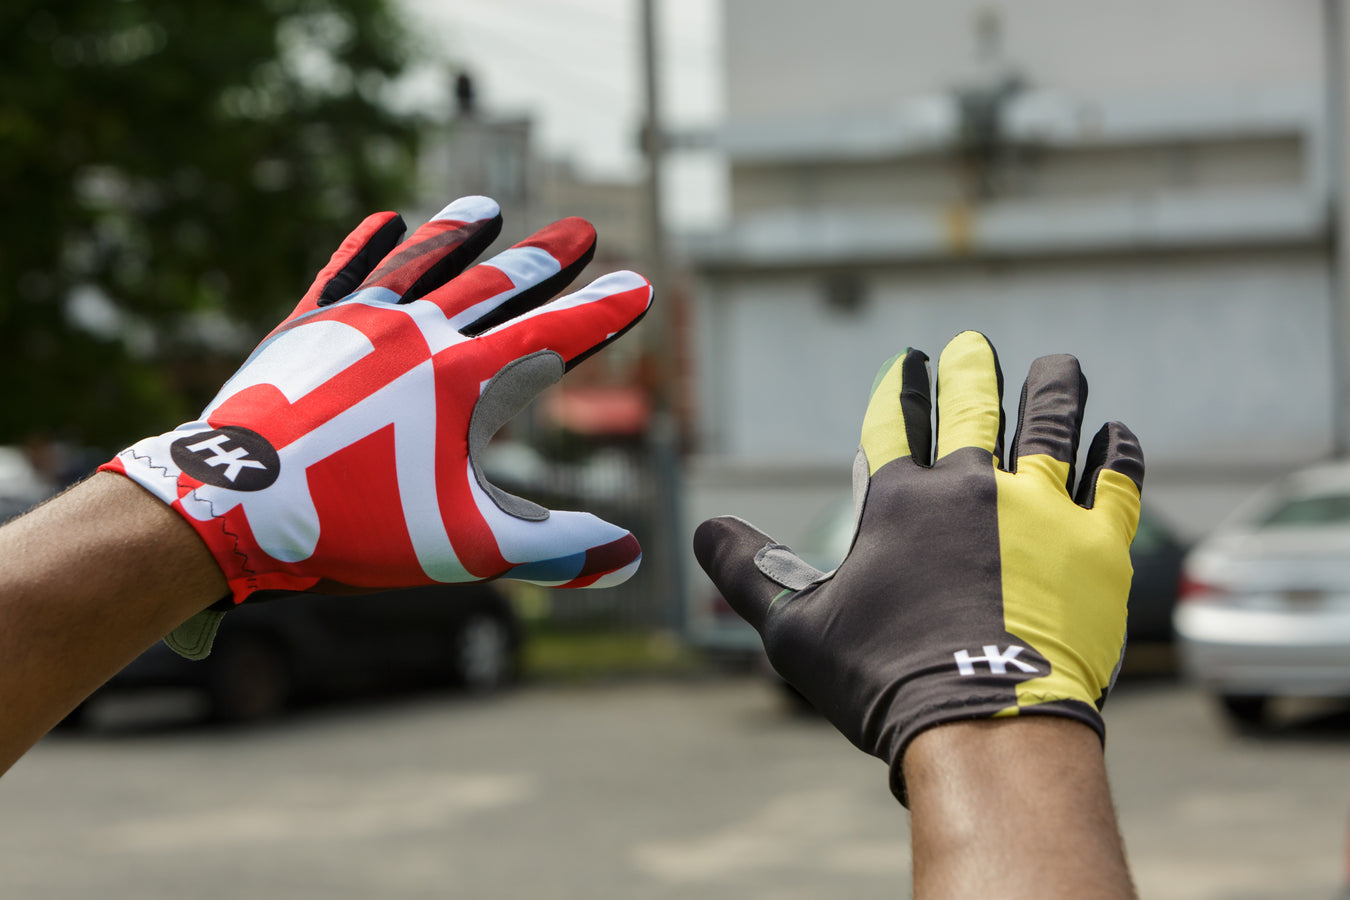 Killer Gloves